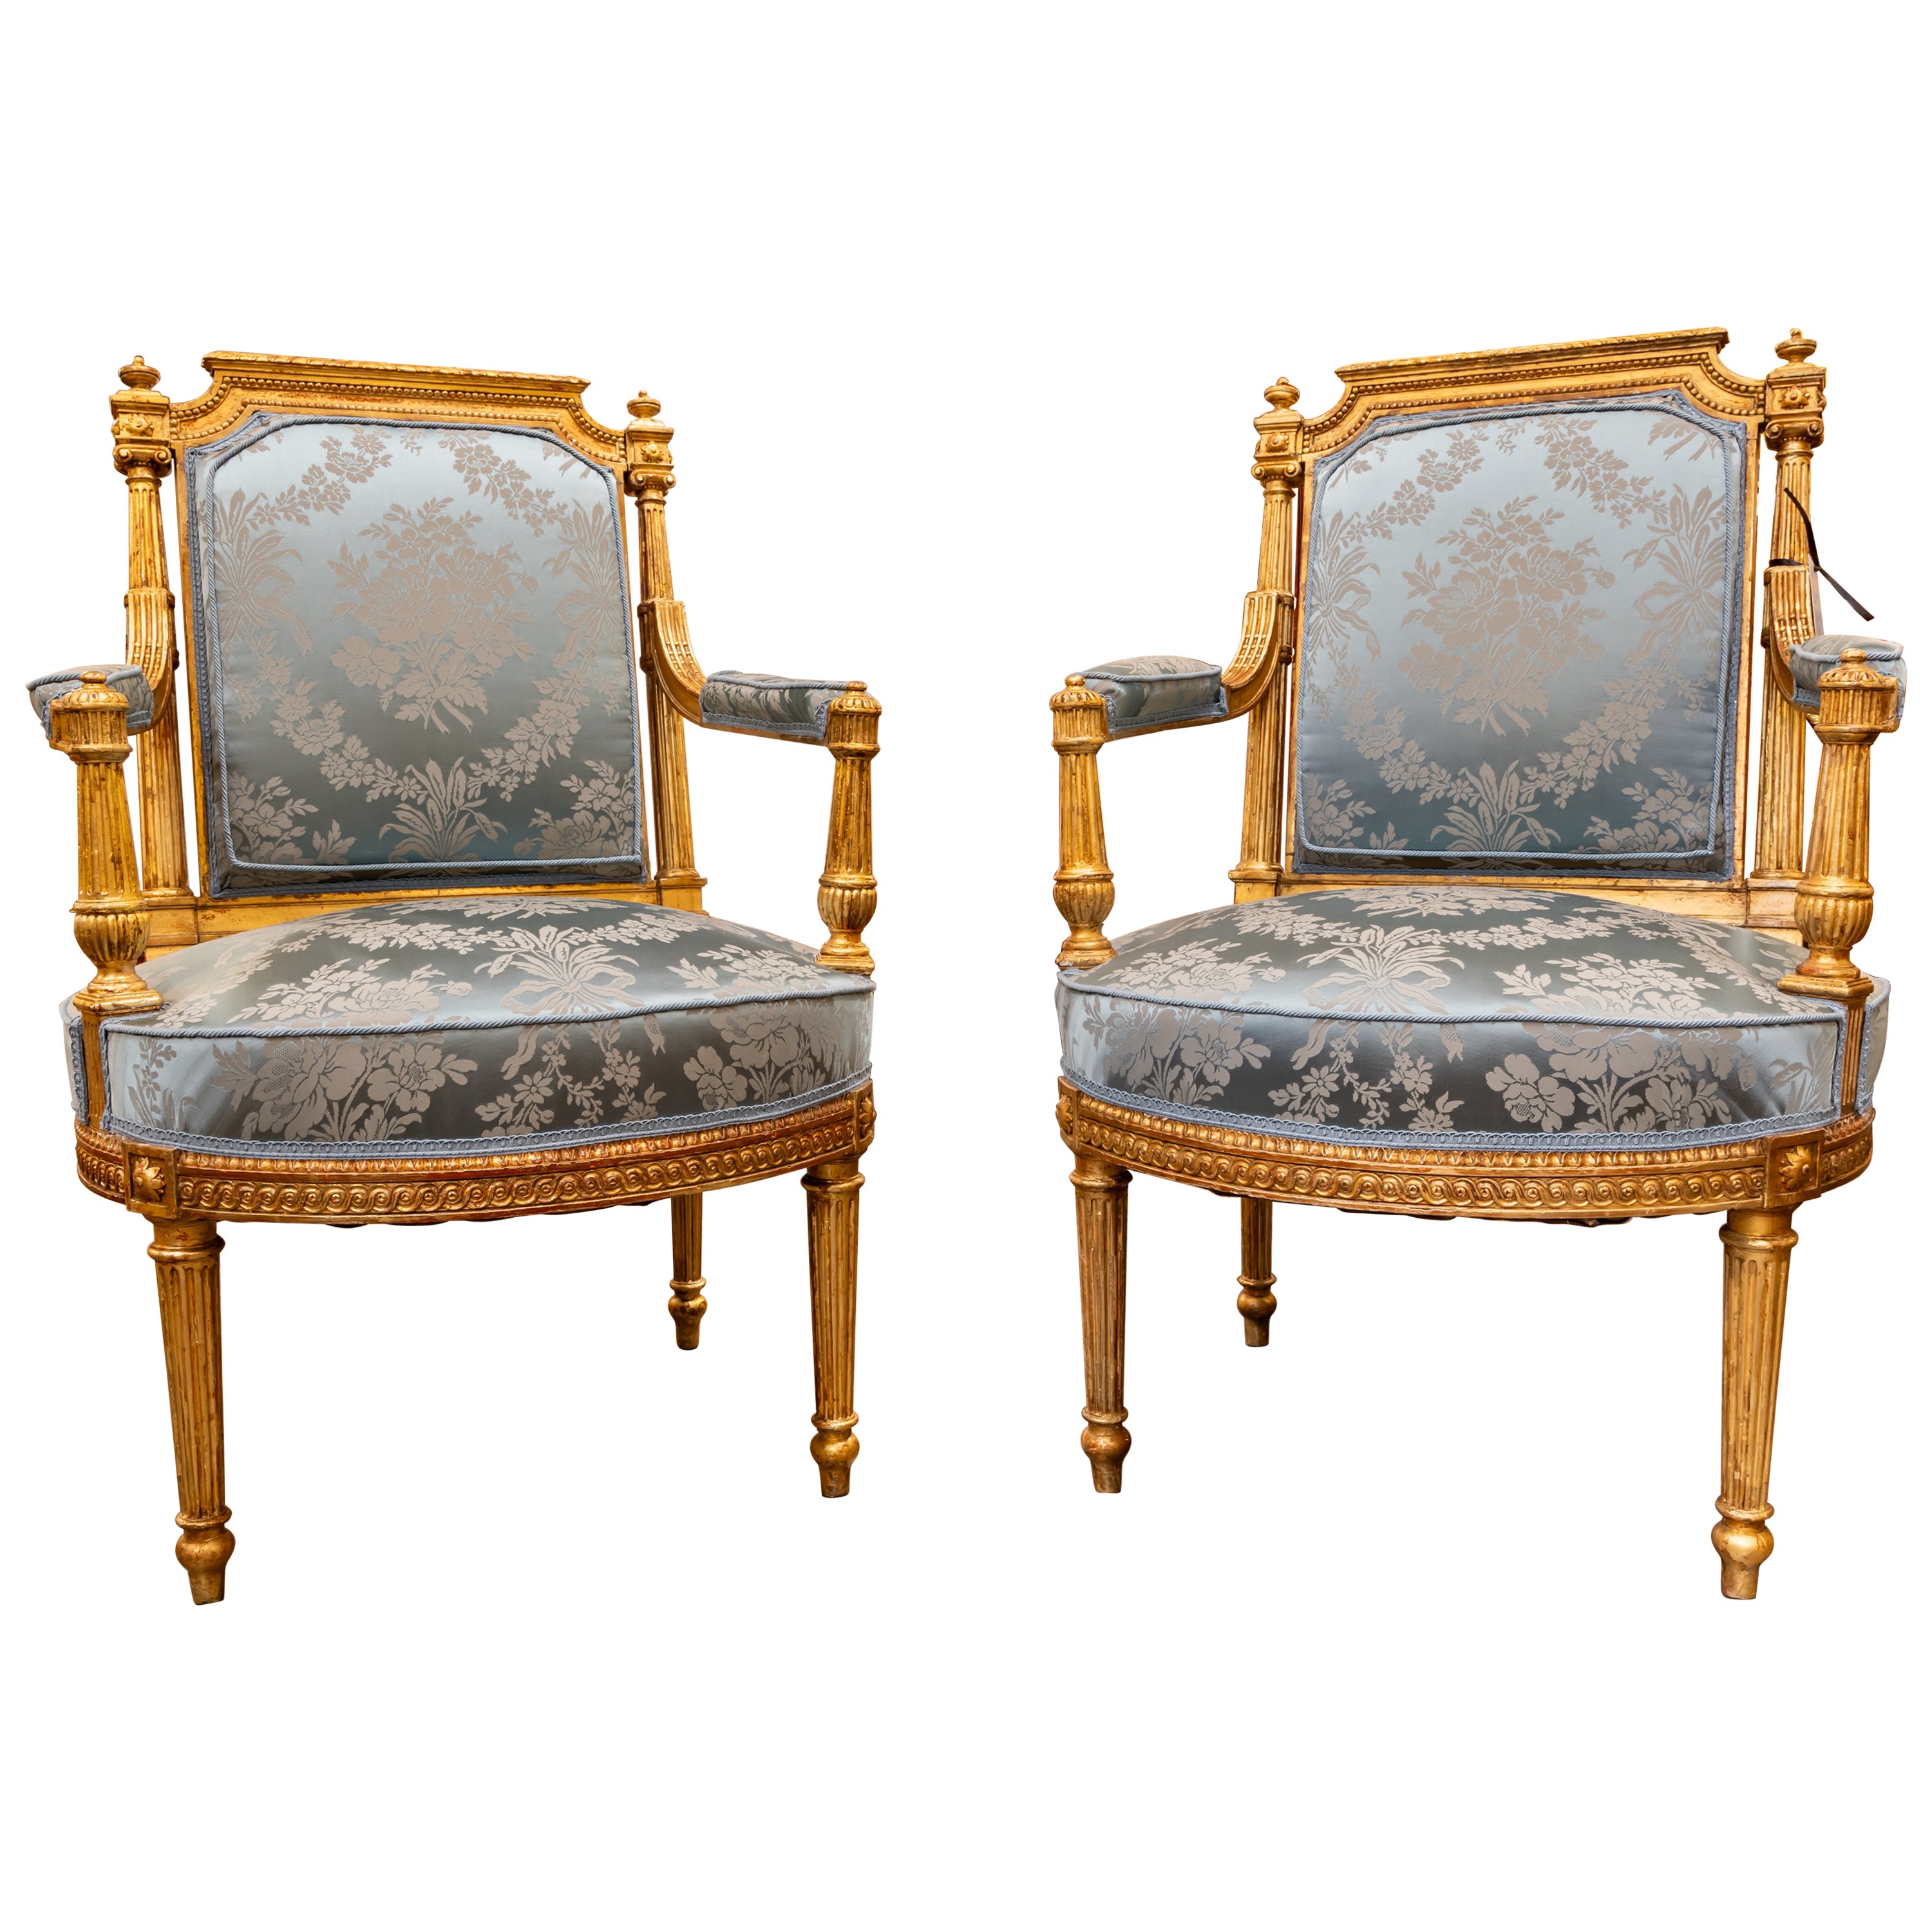 Ein feines Paar handgeschnitzter und vergoldeter französischer Louis-XVI-Sessel des 19. Jahrhunderts. 